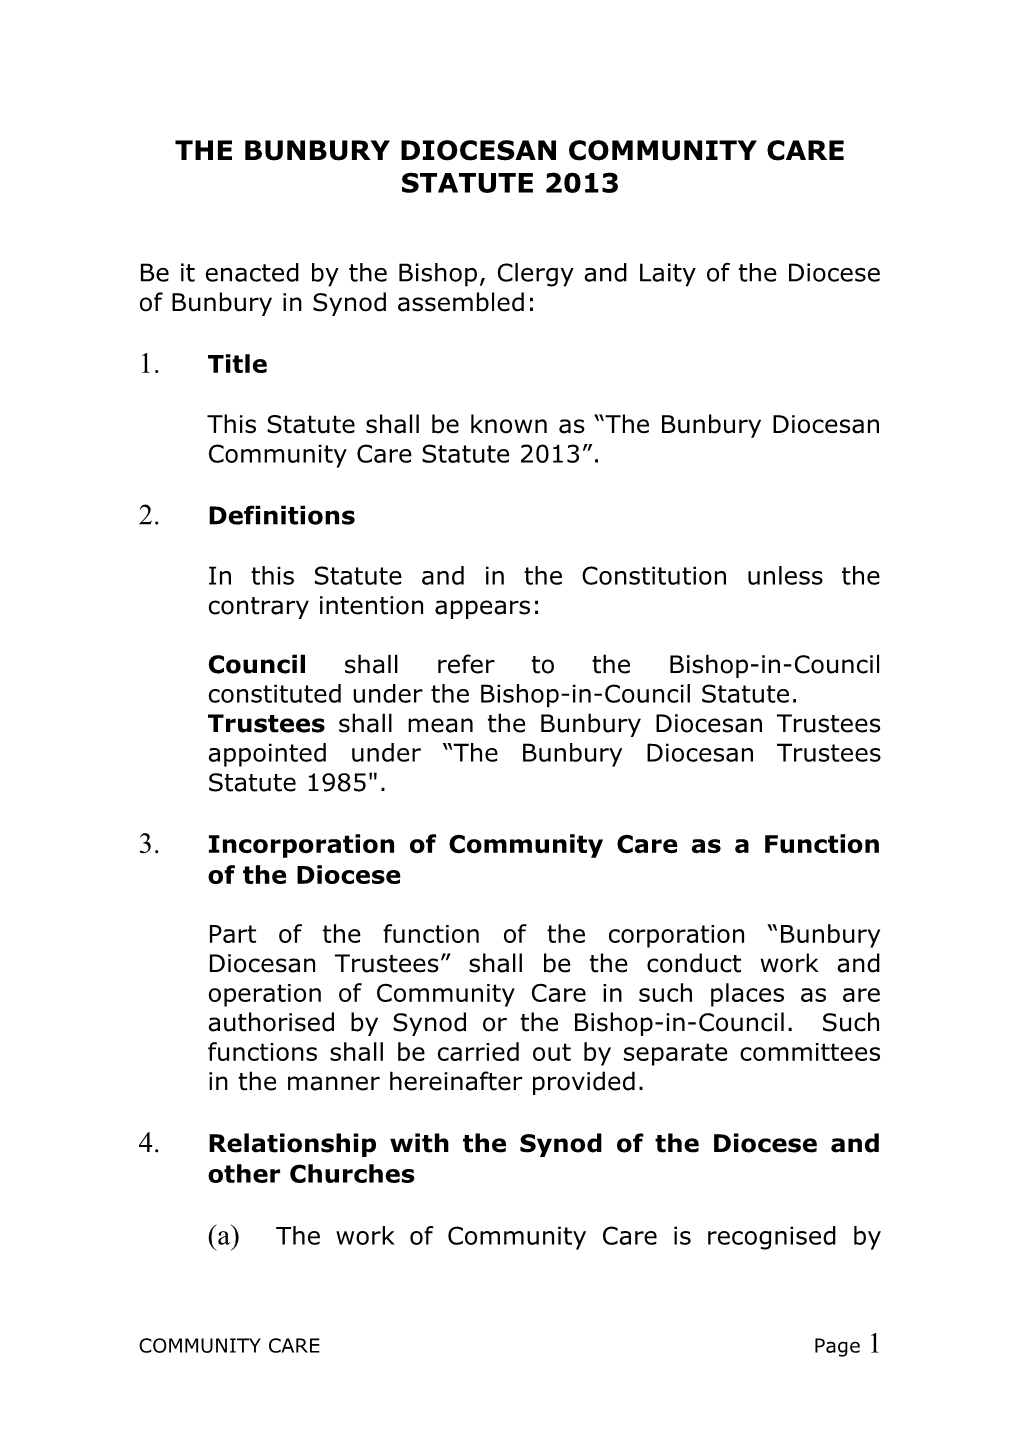 The Bunbury Diocesan Community Care Statute 2013